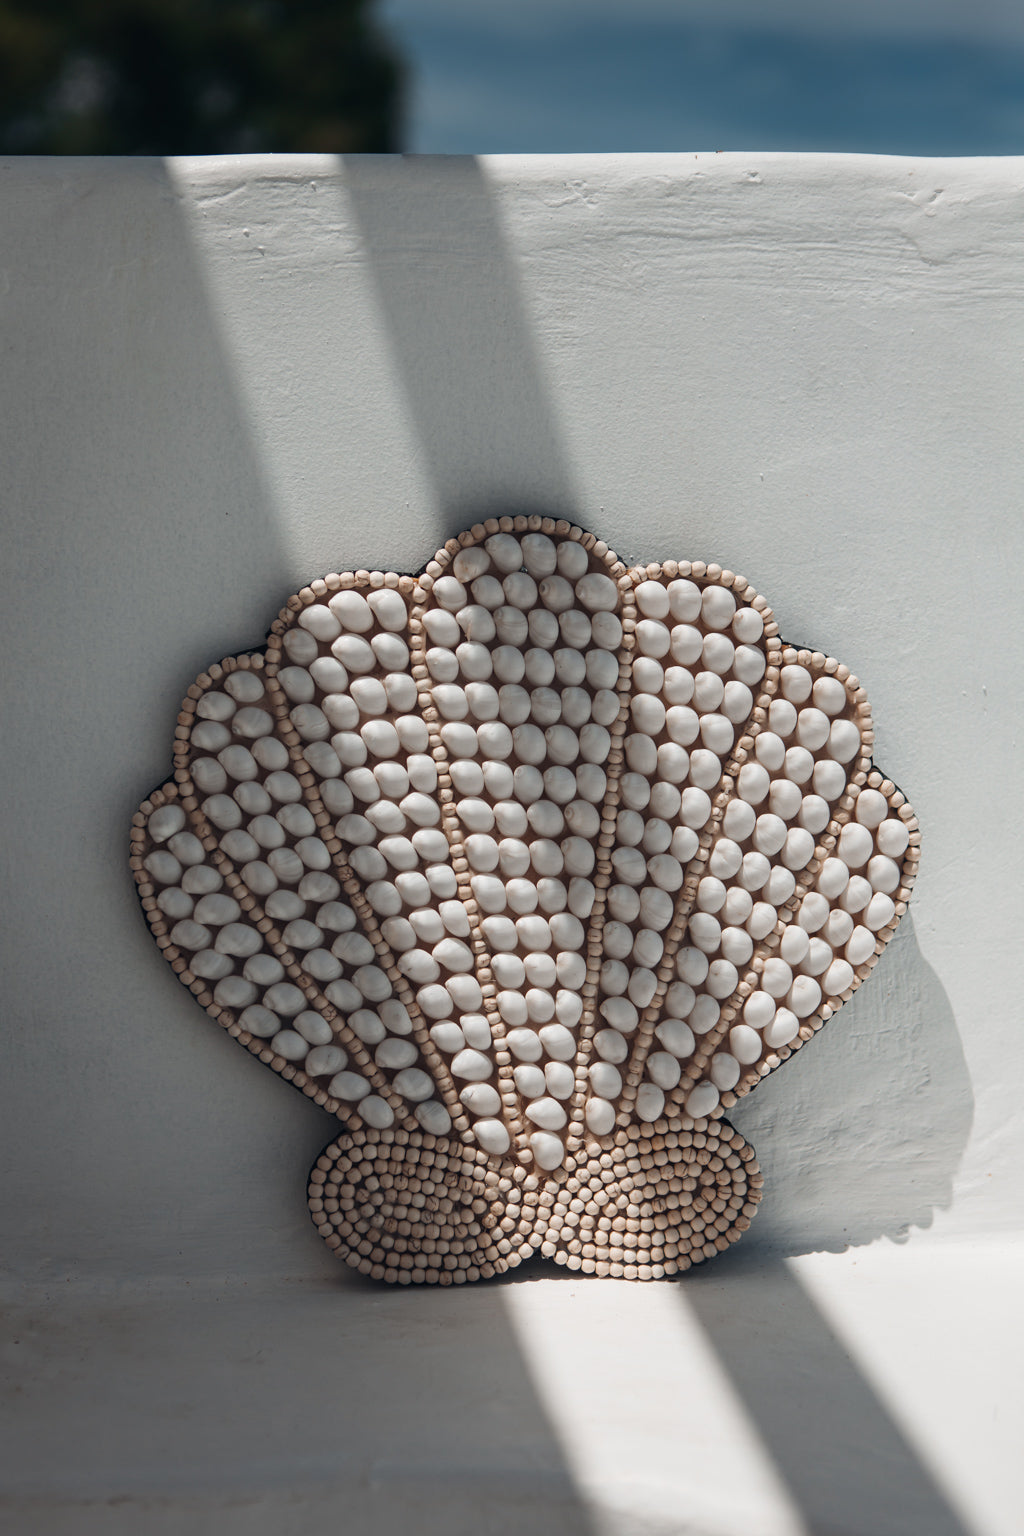 Coquillage décoratif en coquillages et perles de bois